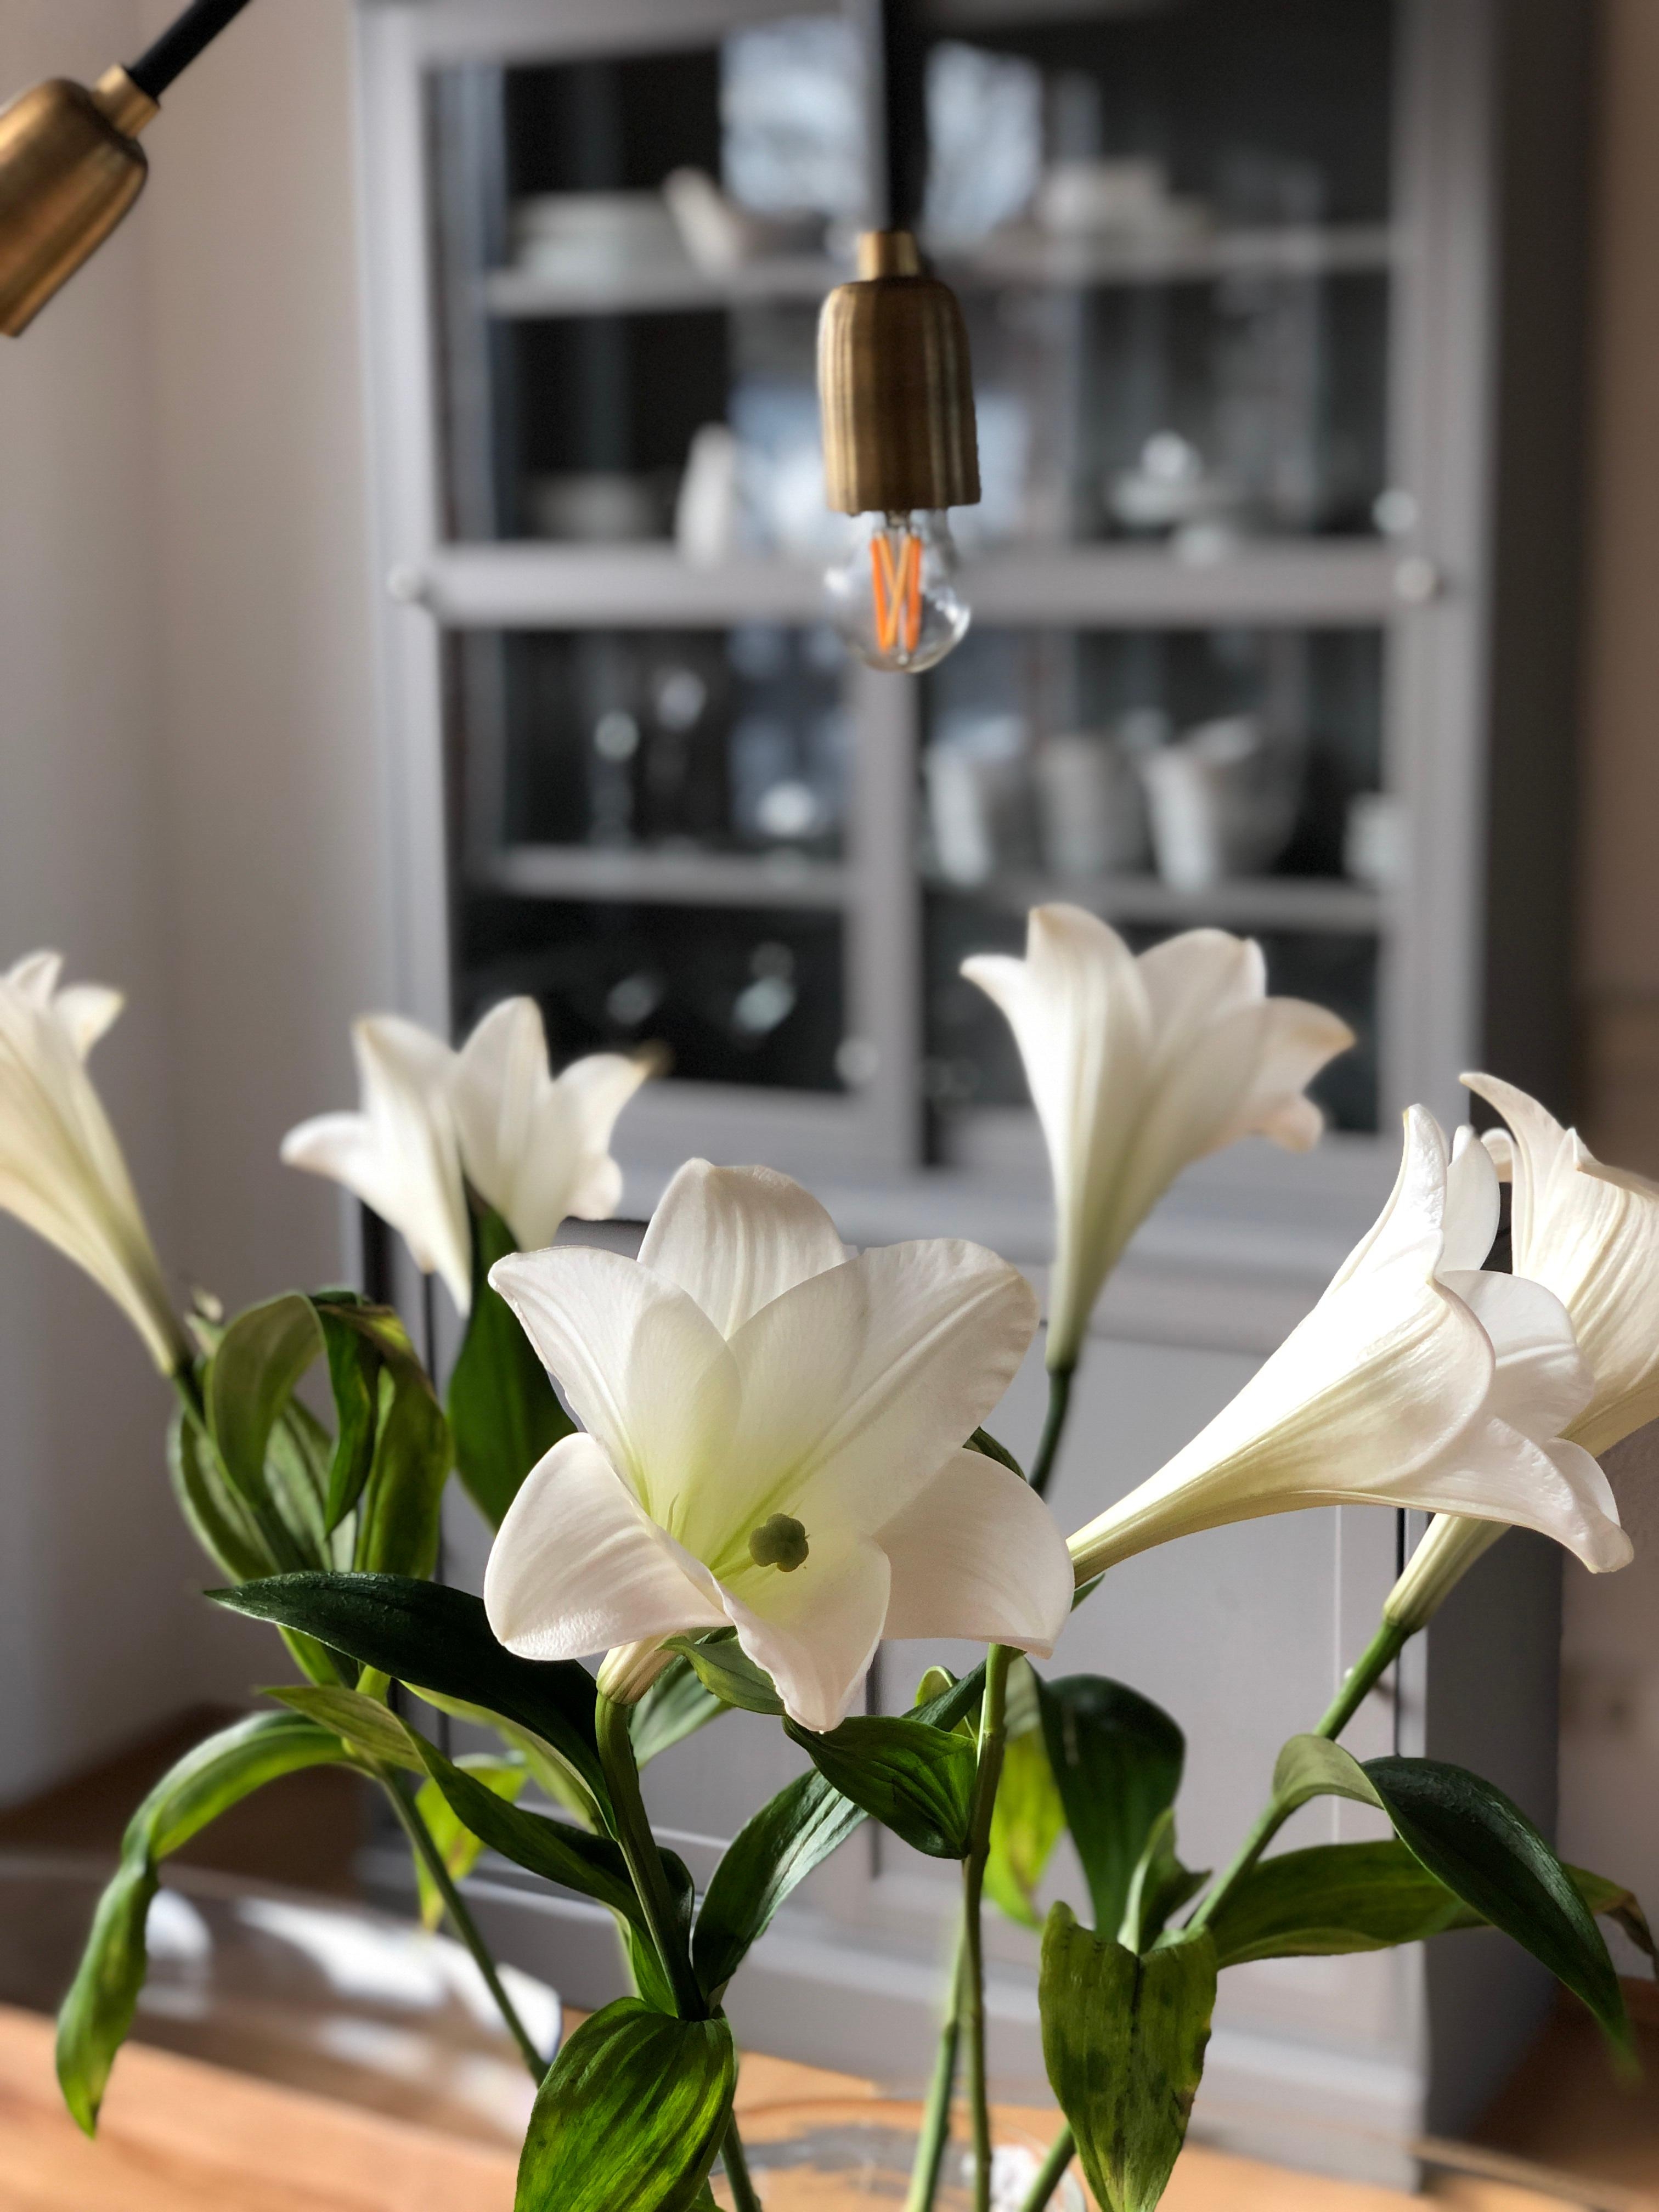 Frühling kann kommen! 
#lilies #esszimmer #loft #neuewohnung